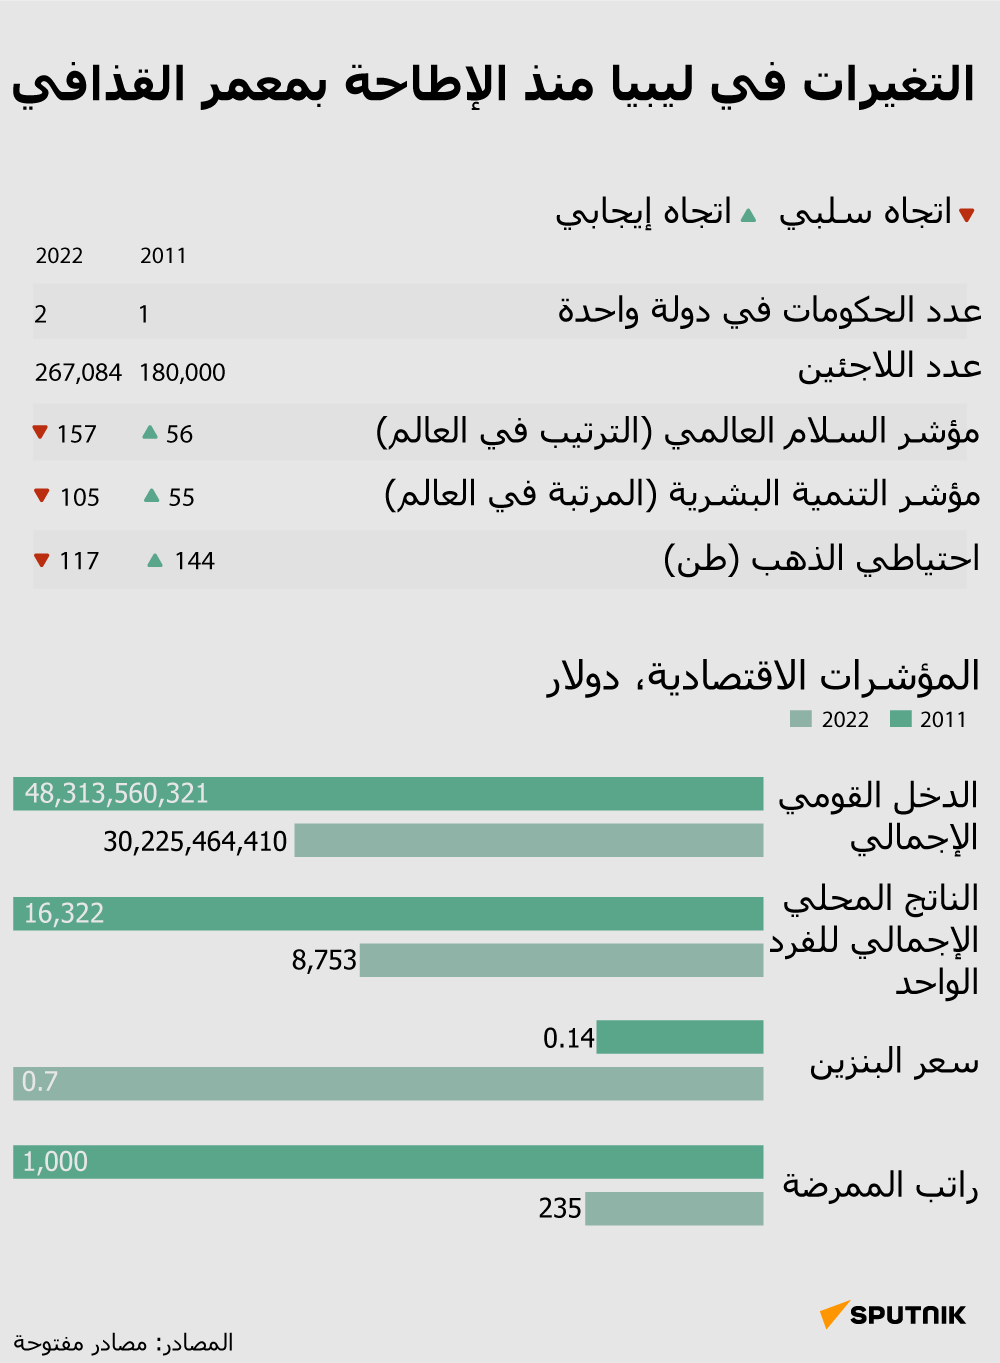 التغيرات في ليبيا منذ الإطاحة بمعمر القذافي - سبوتنيك عربي